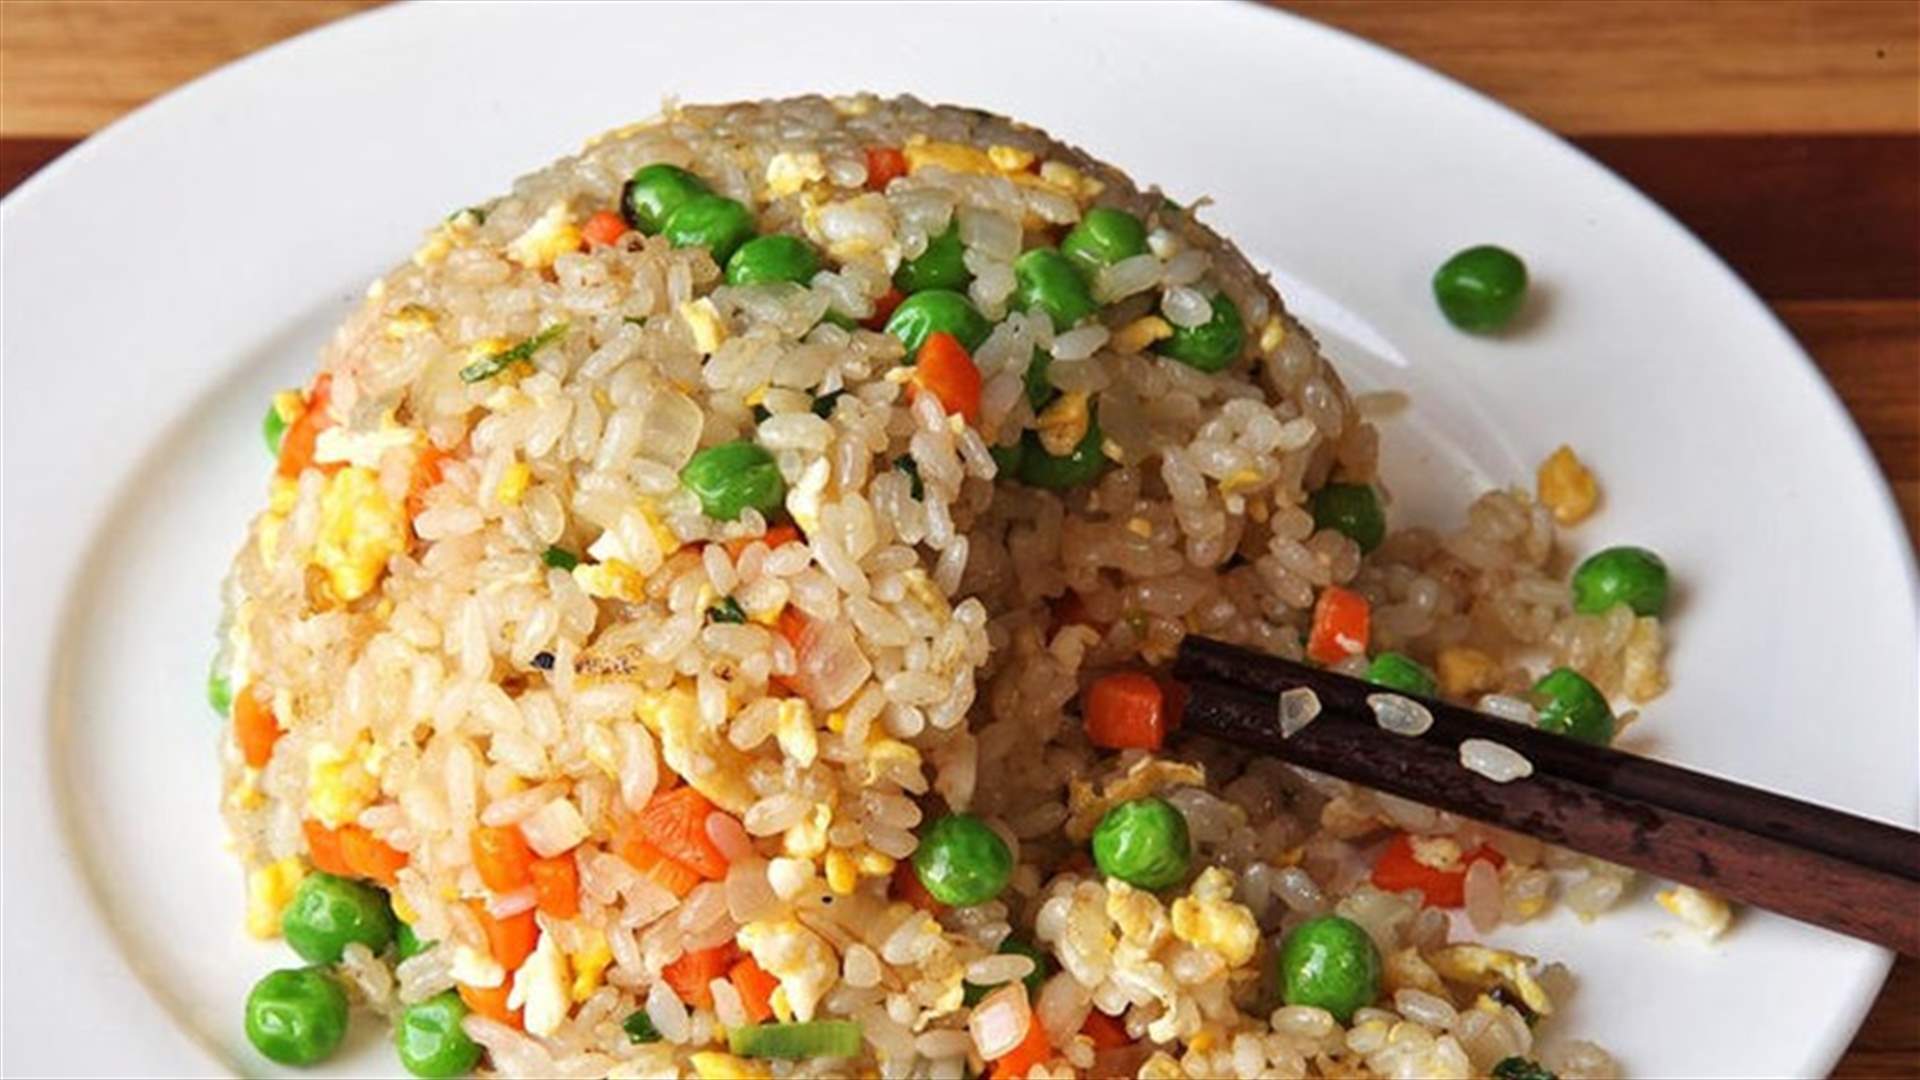 إليكم وصفة الأرز بالخضار